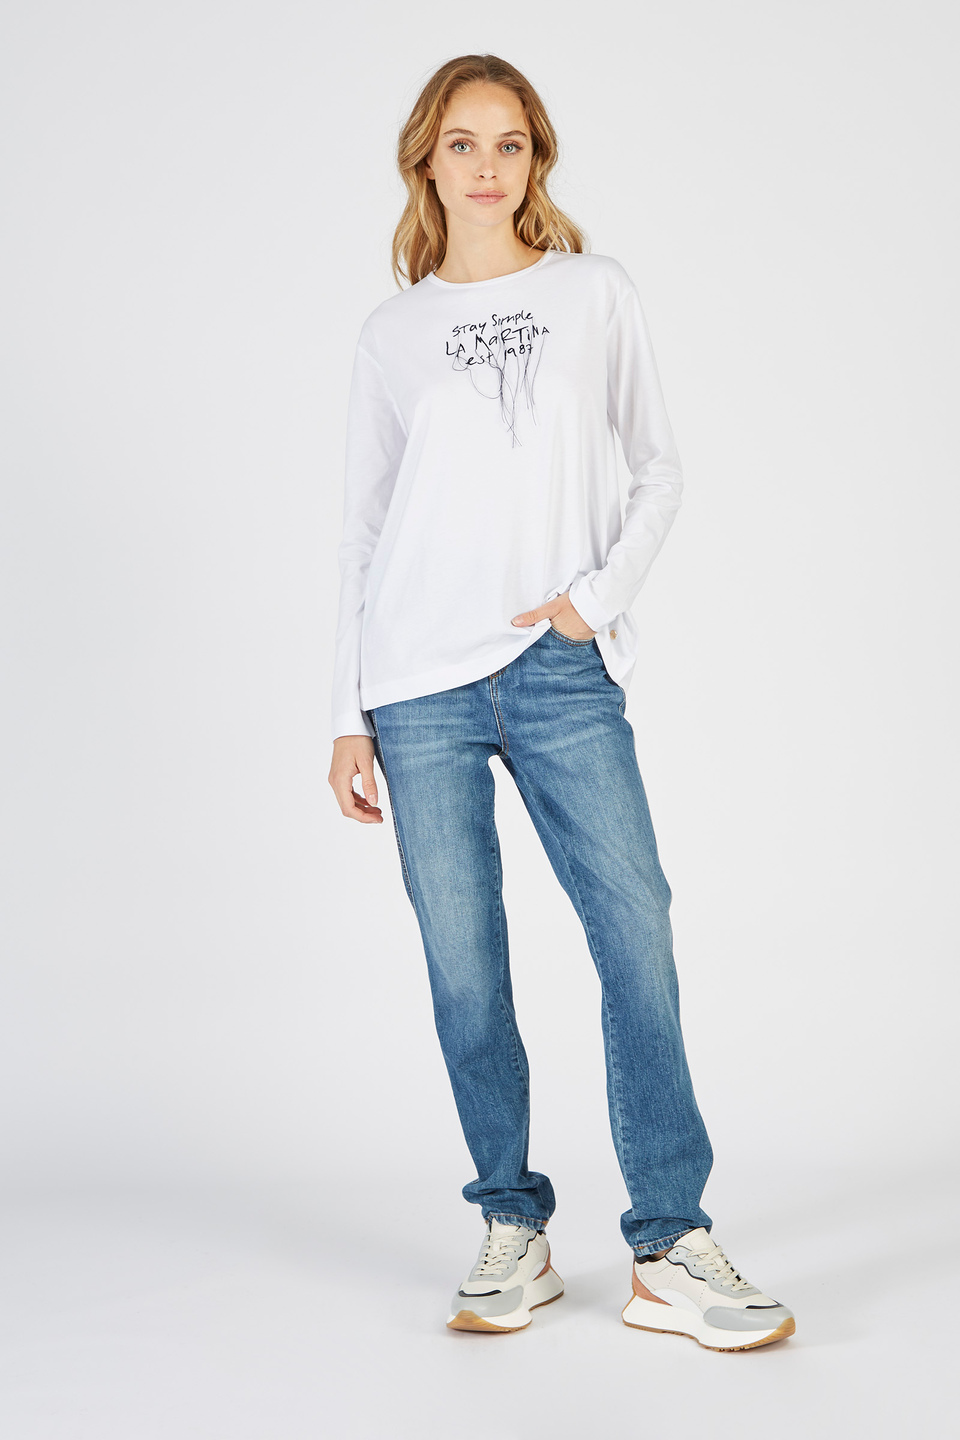 Damen-T-Shirt aus Baumwolle mit Rundhalsausschnitt und langen Ärmeln | La Martina - Official Online Shop